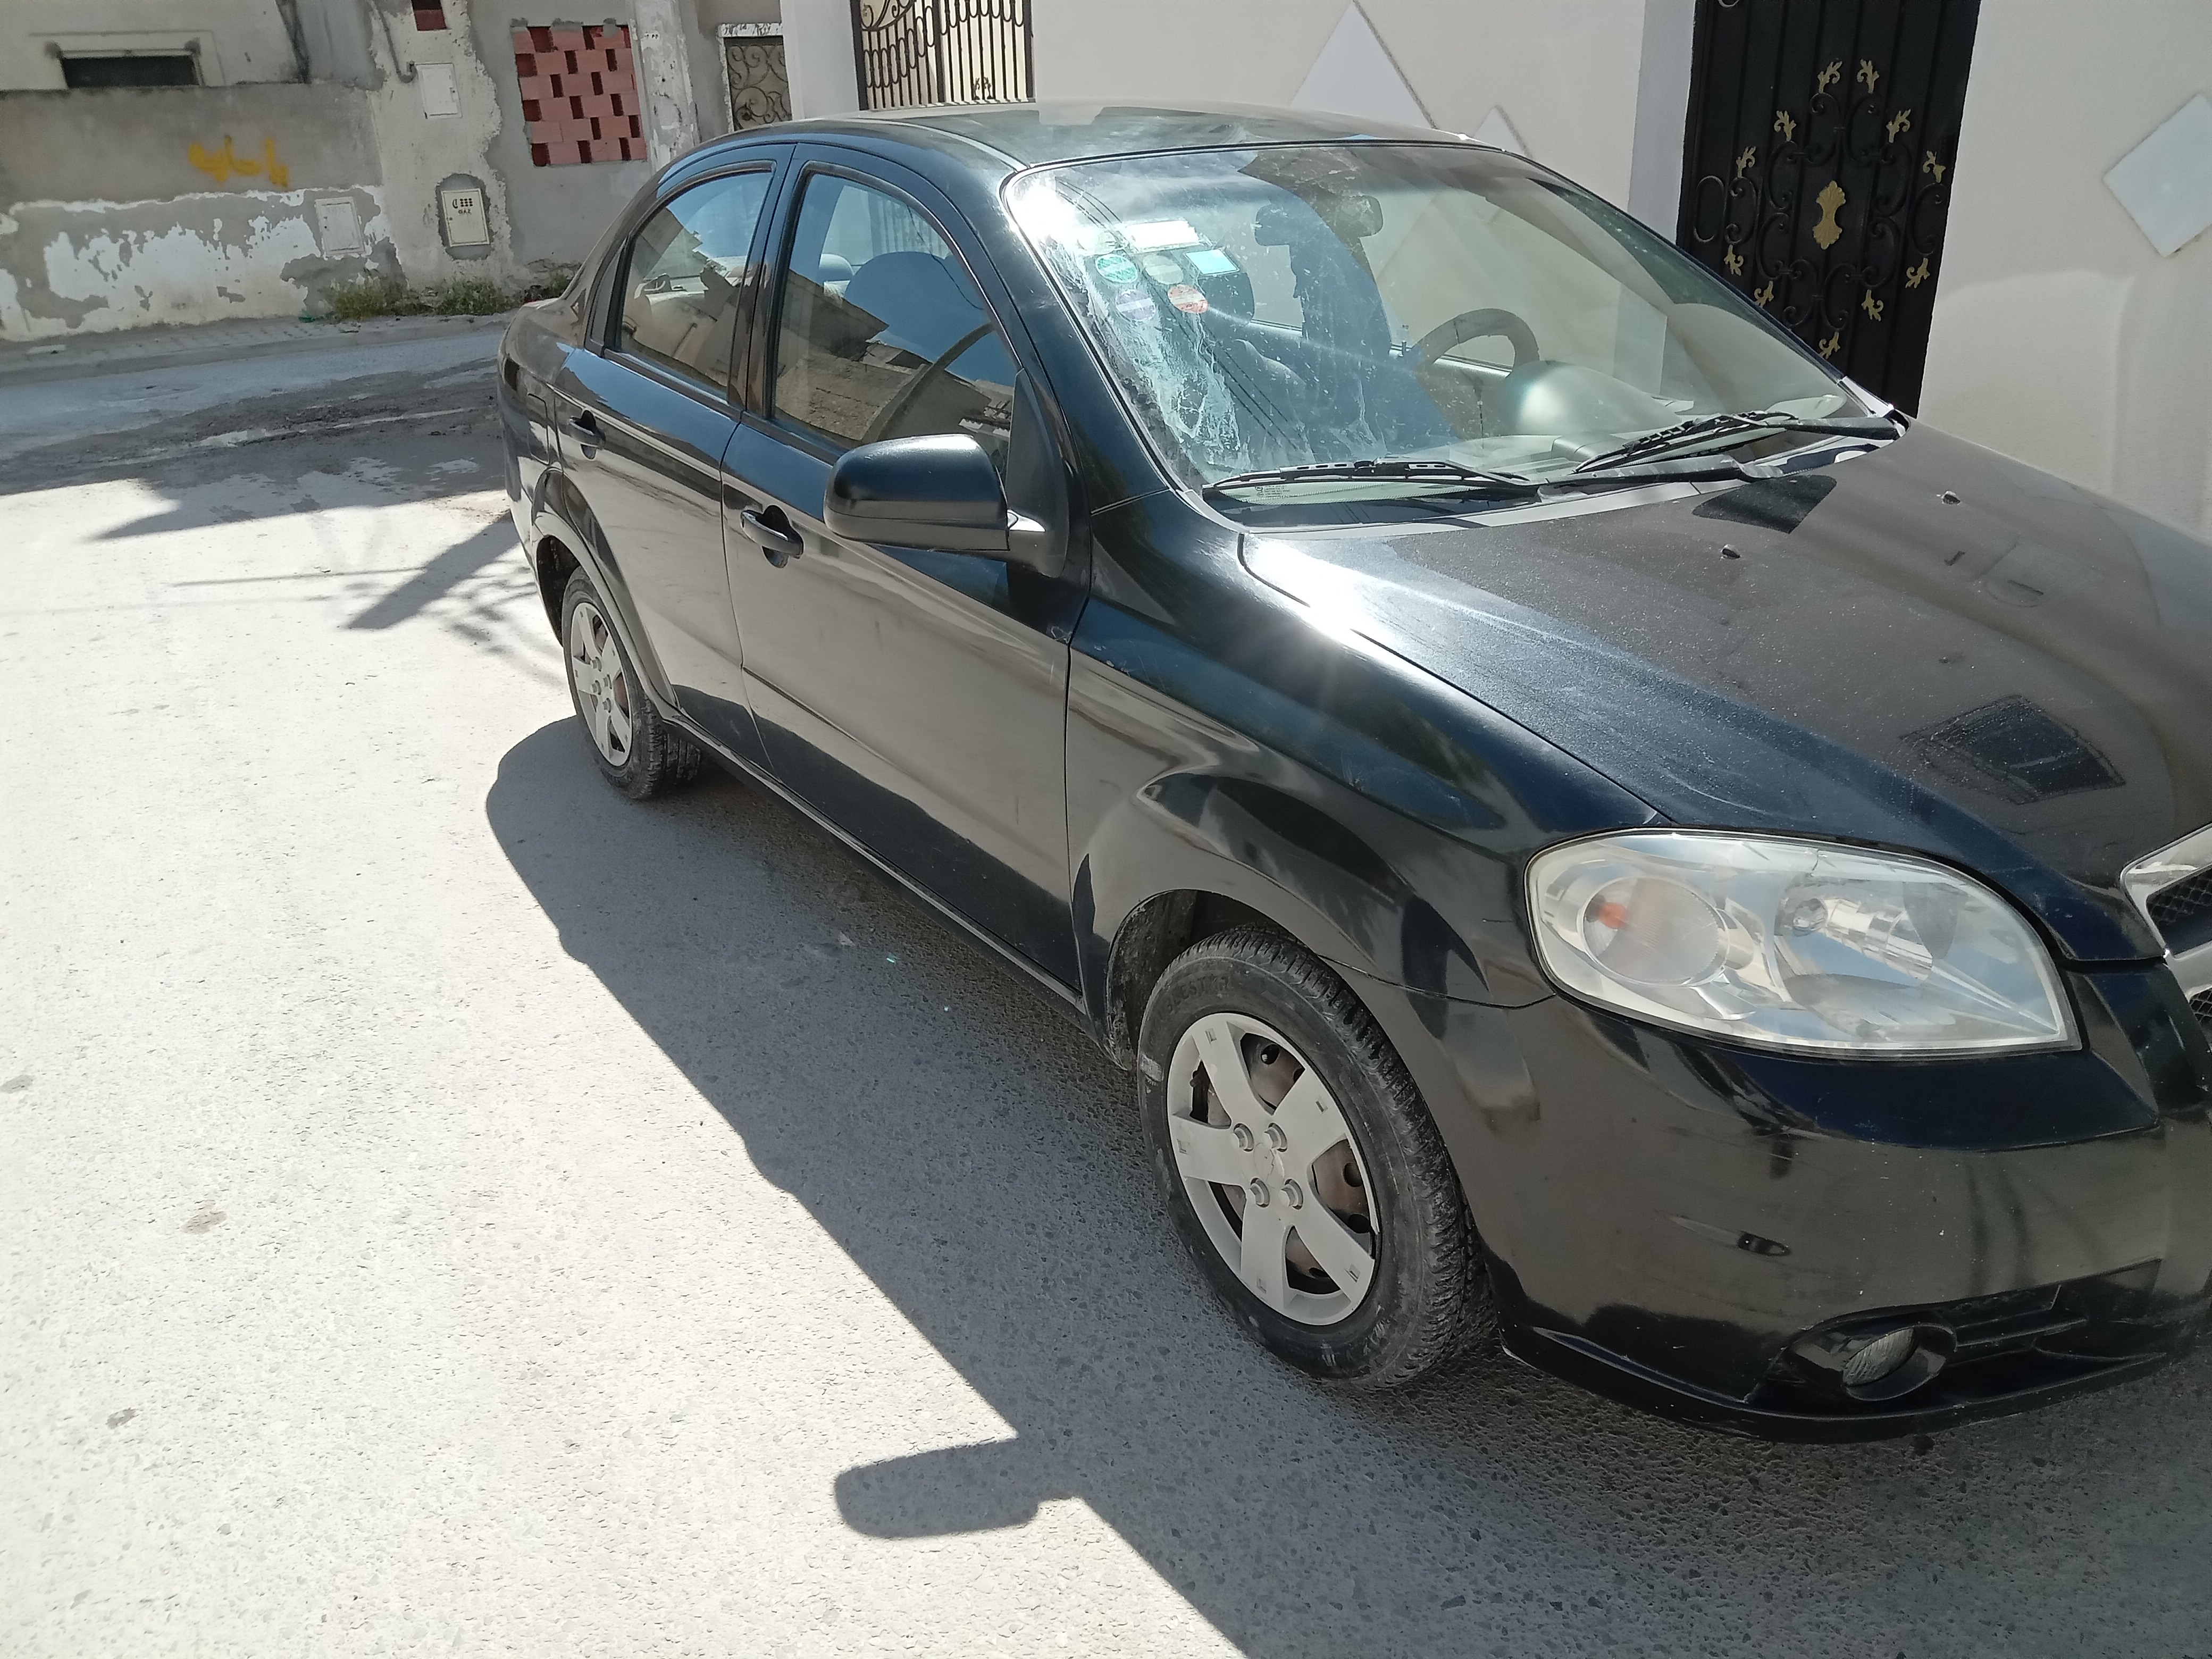 Chevrolet Aveo - Tunisie